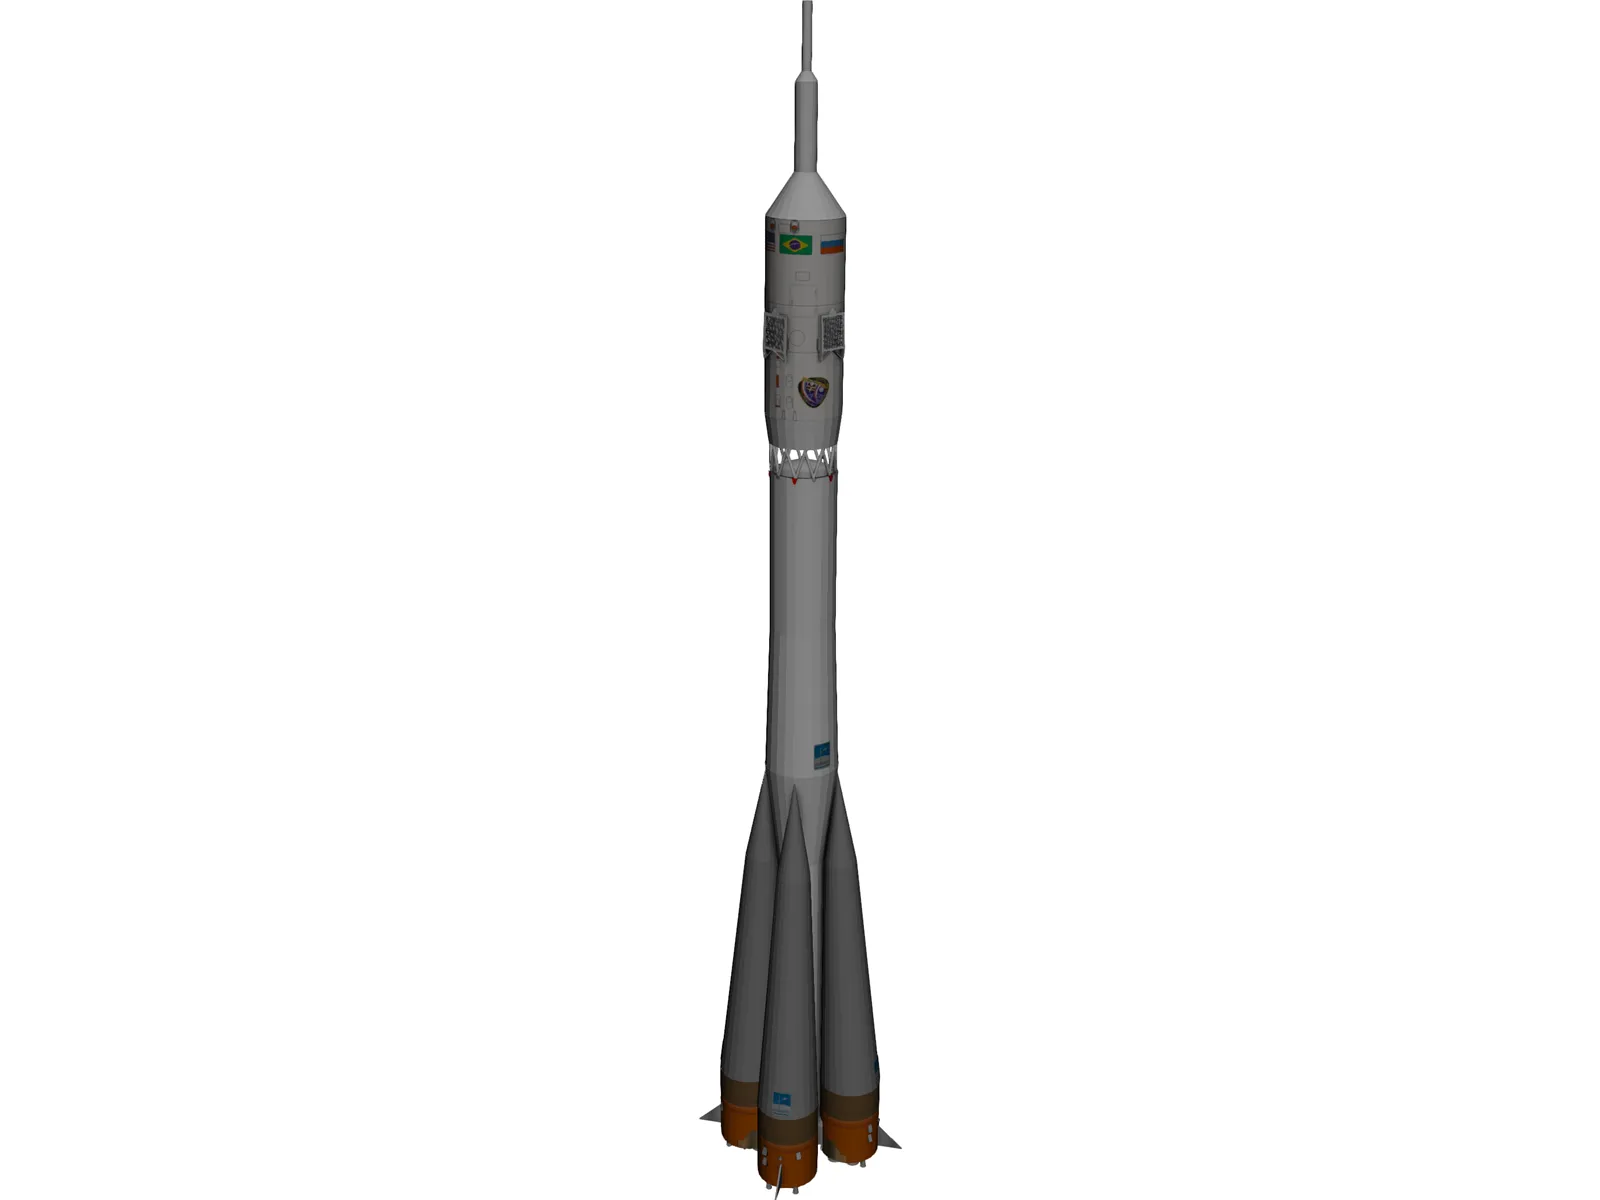 Soyuz Rocket 3D Model